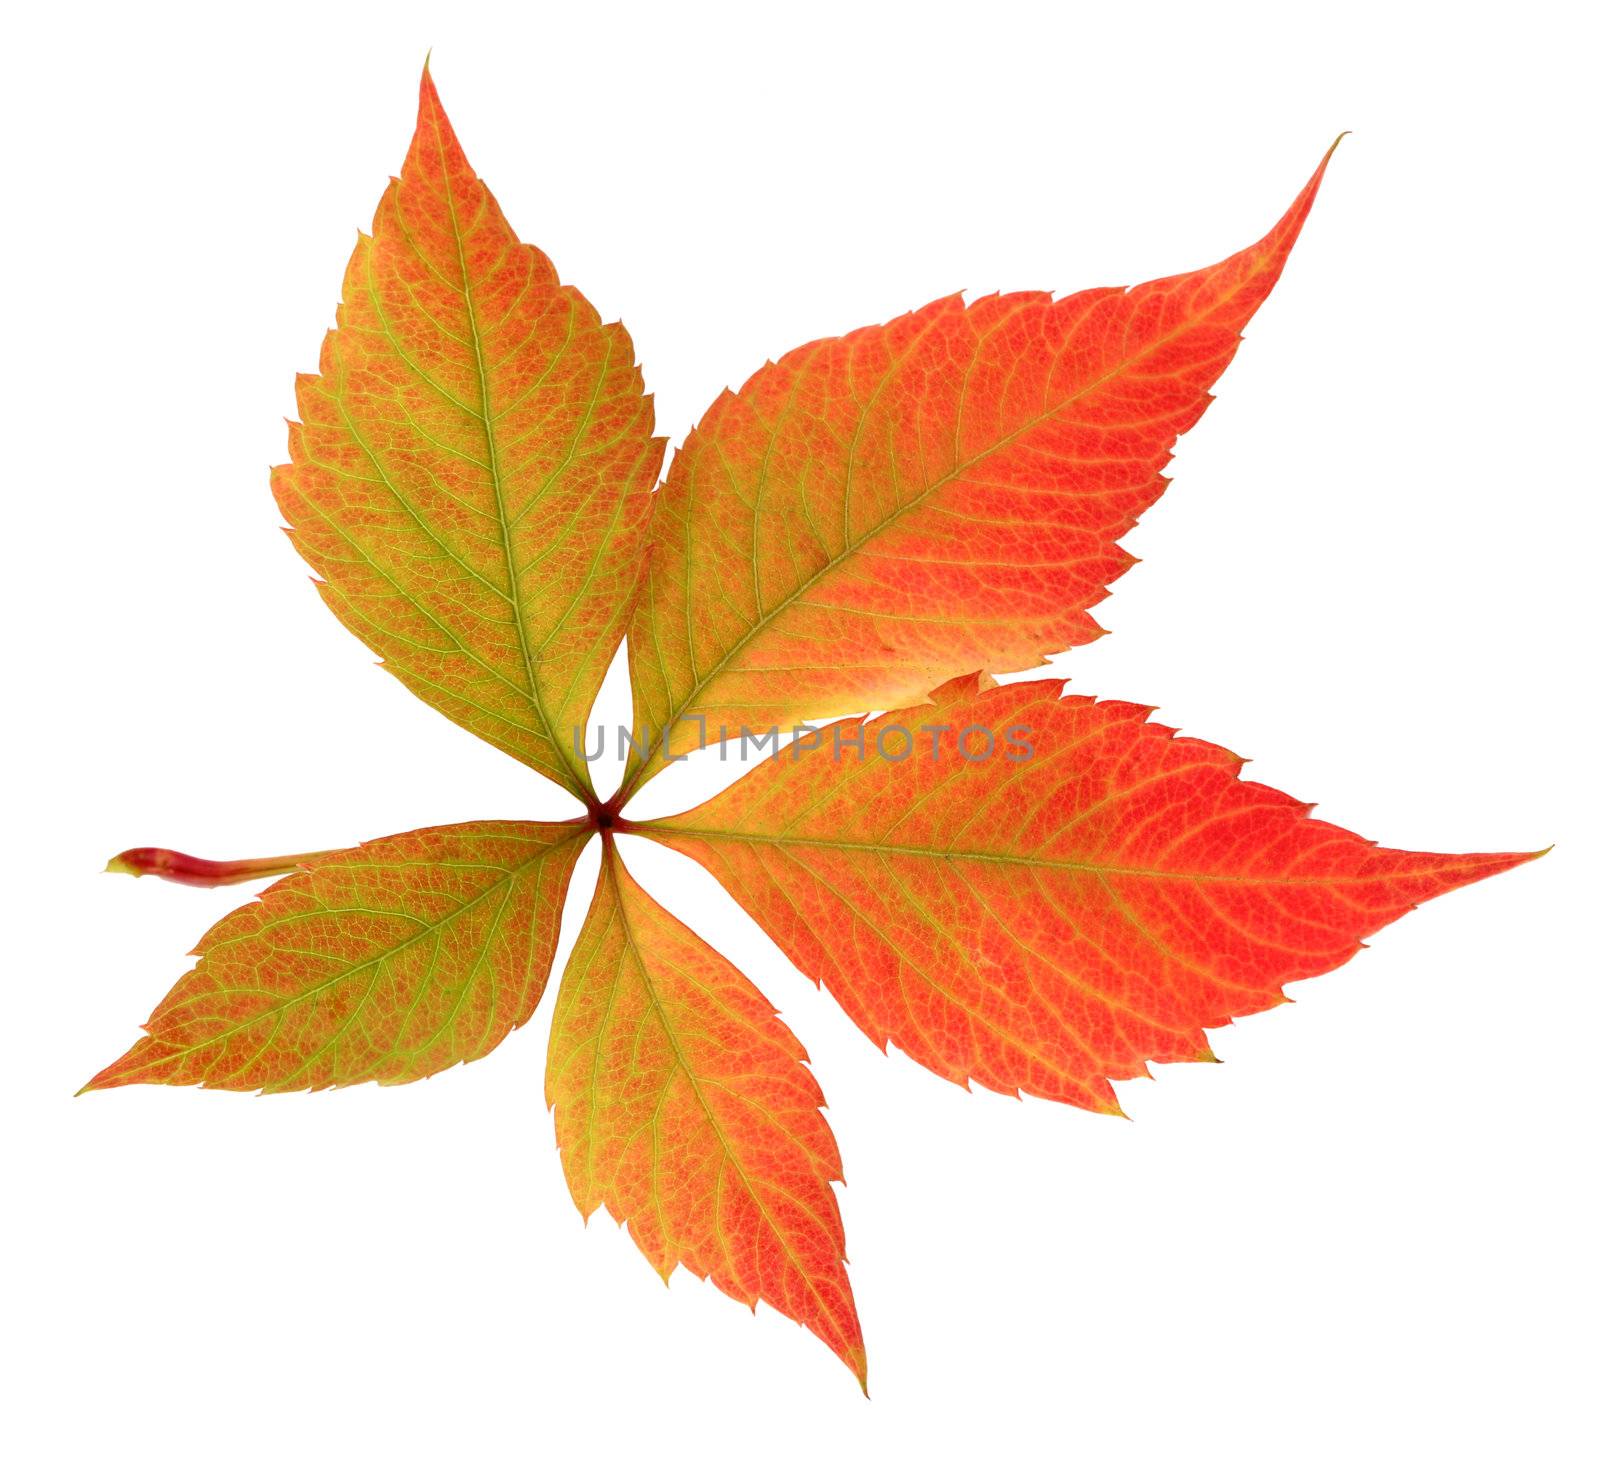 autumn leaf on white background by rudchenko